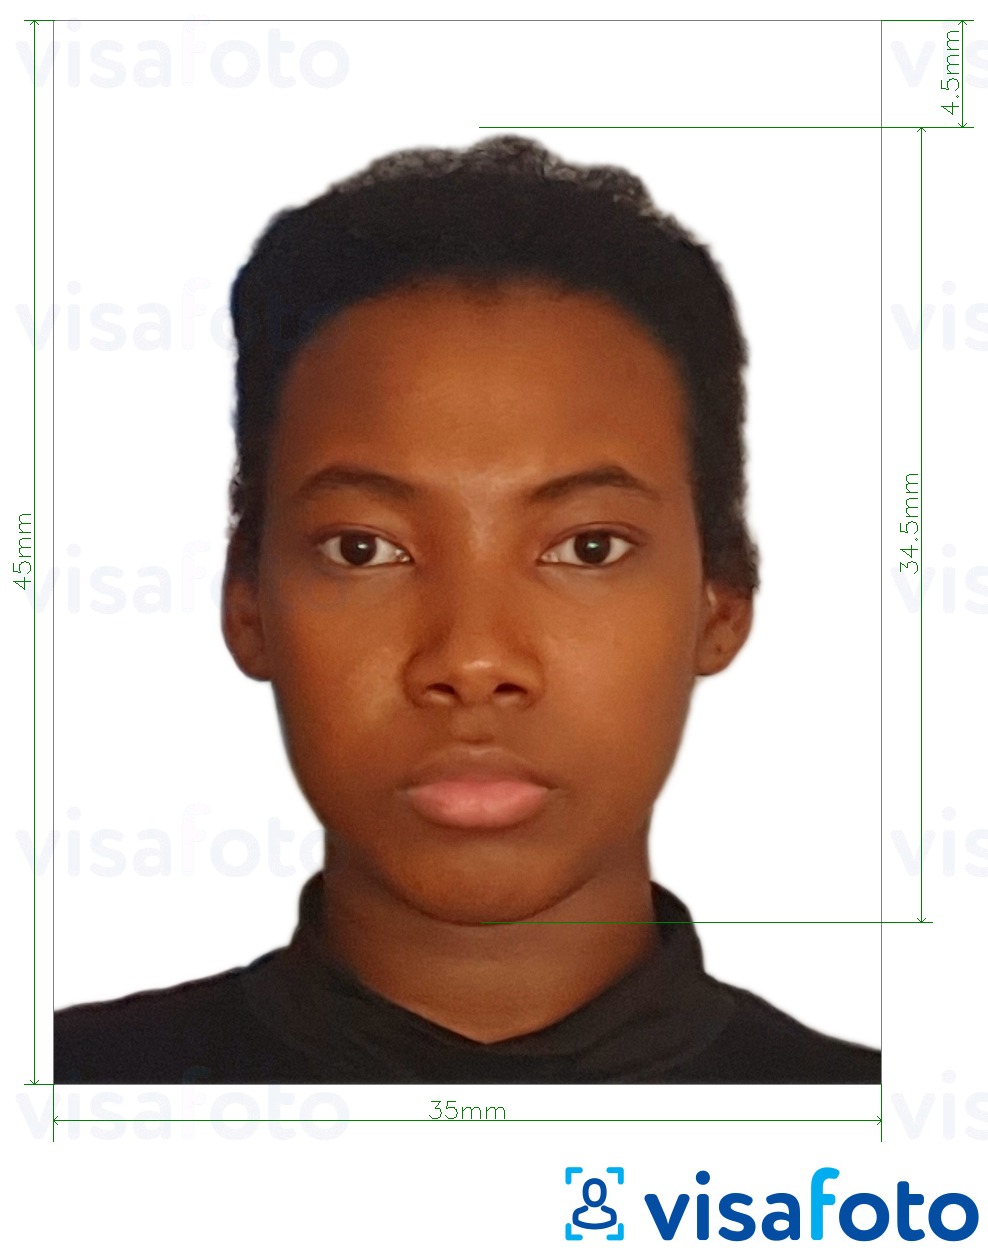 肯尼亚护照35x45毫米 的标准尺寸照片示例